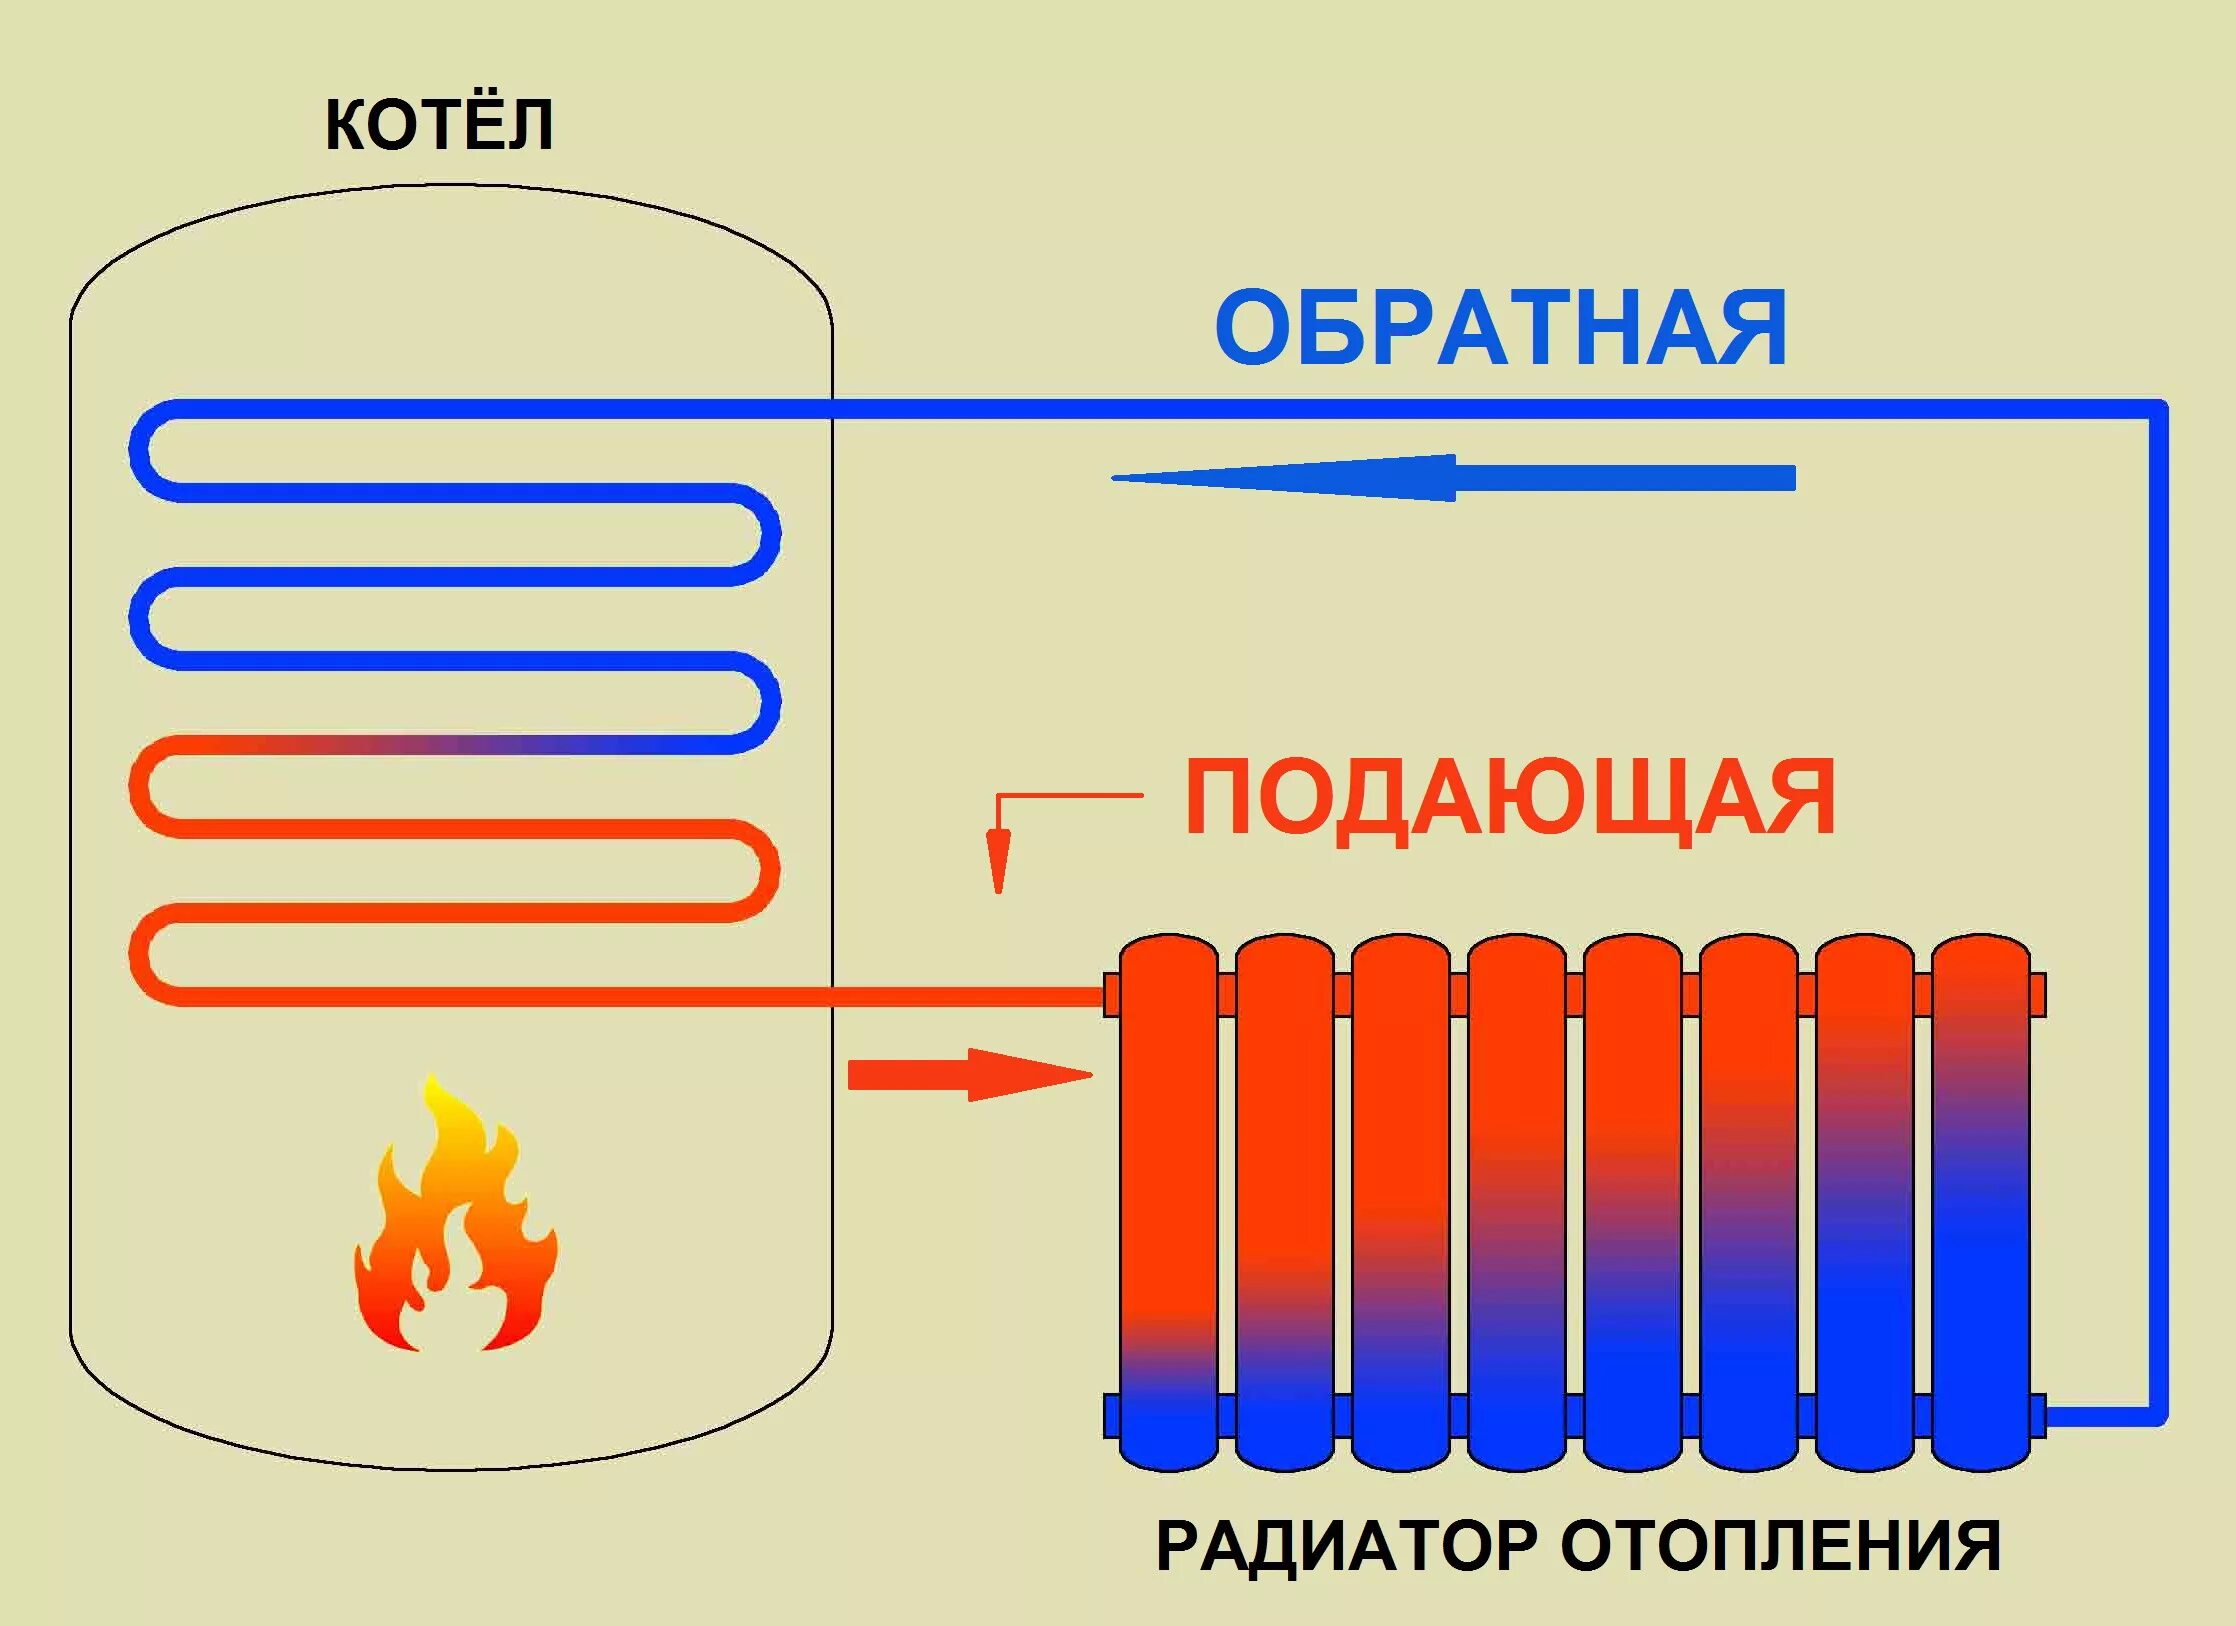 Принципы отопления. Схема циркуляции воды в батареях отопления. Схема работы батареи отопления. Принцип работы батареи отопления. Как устроен радиатор отопления.